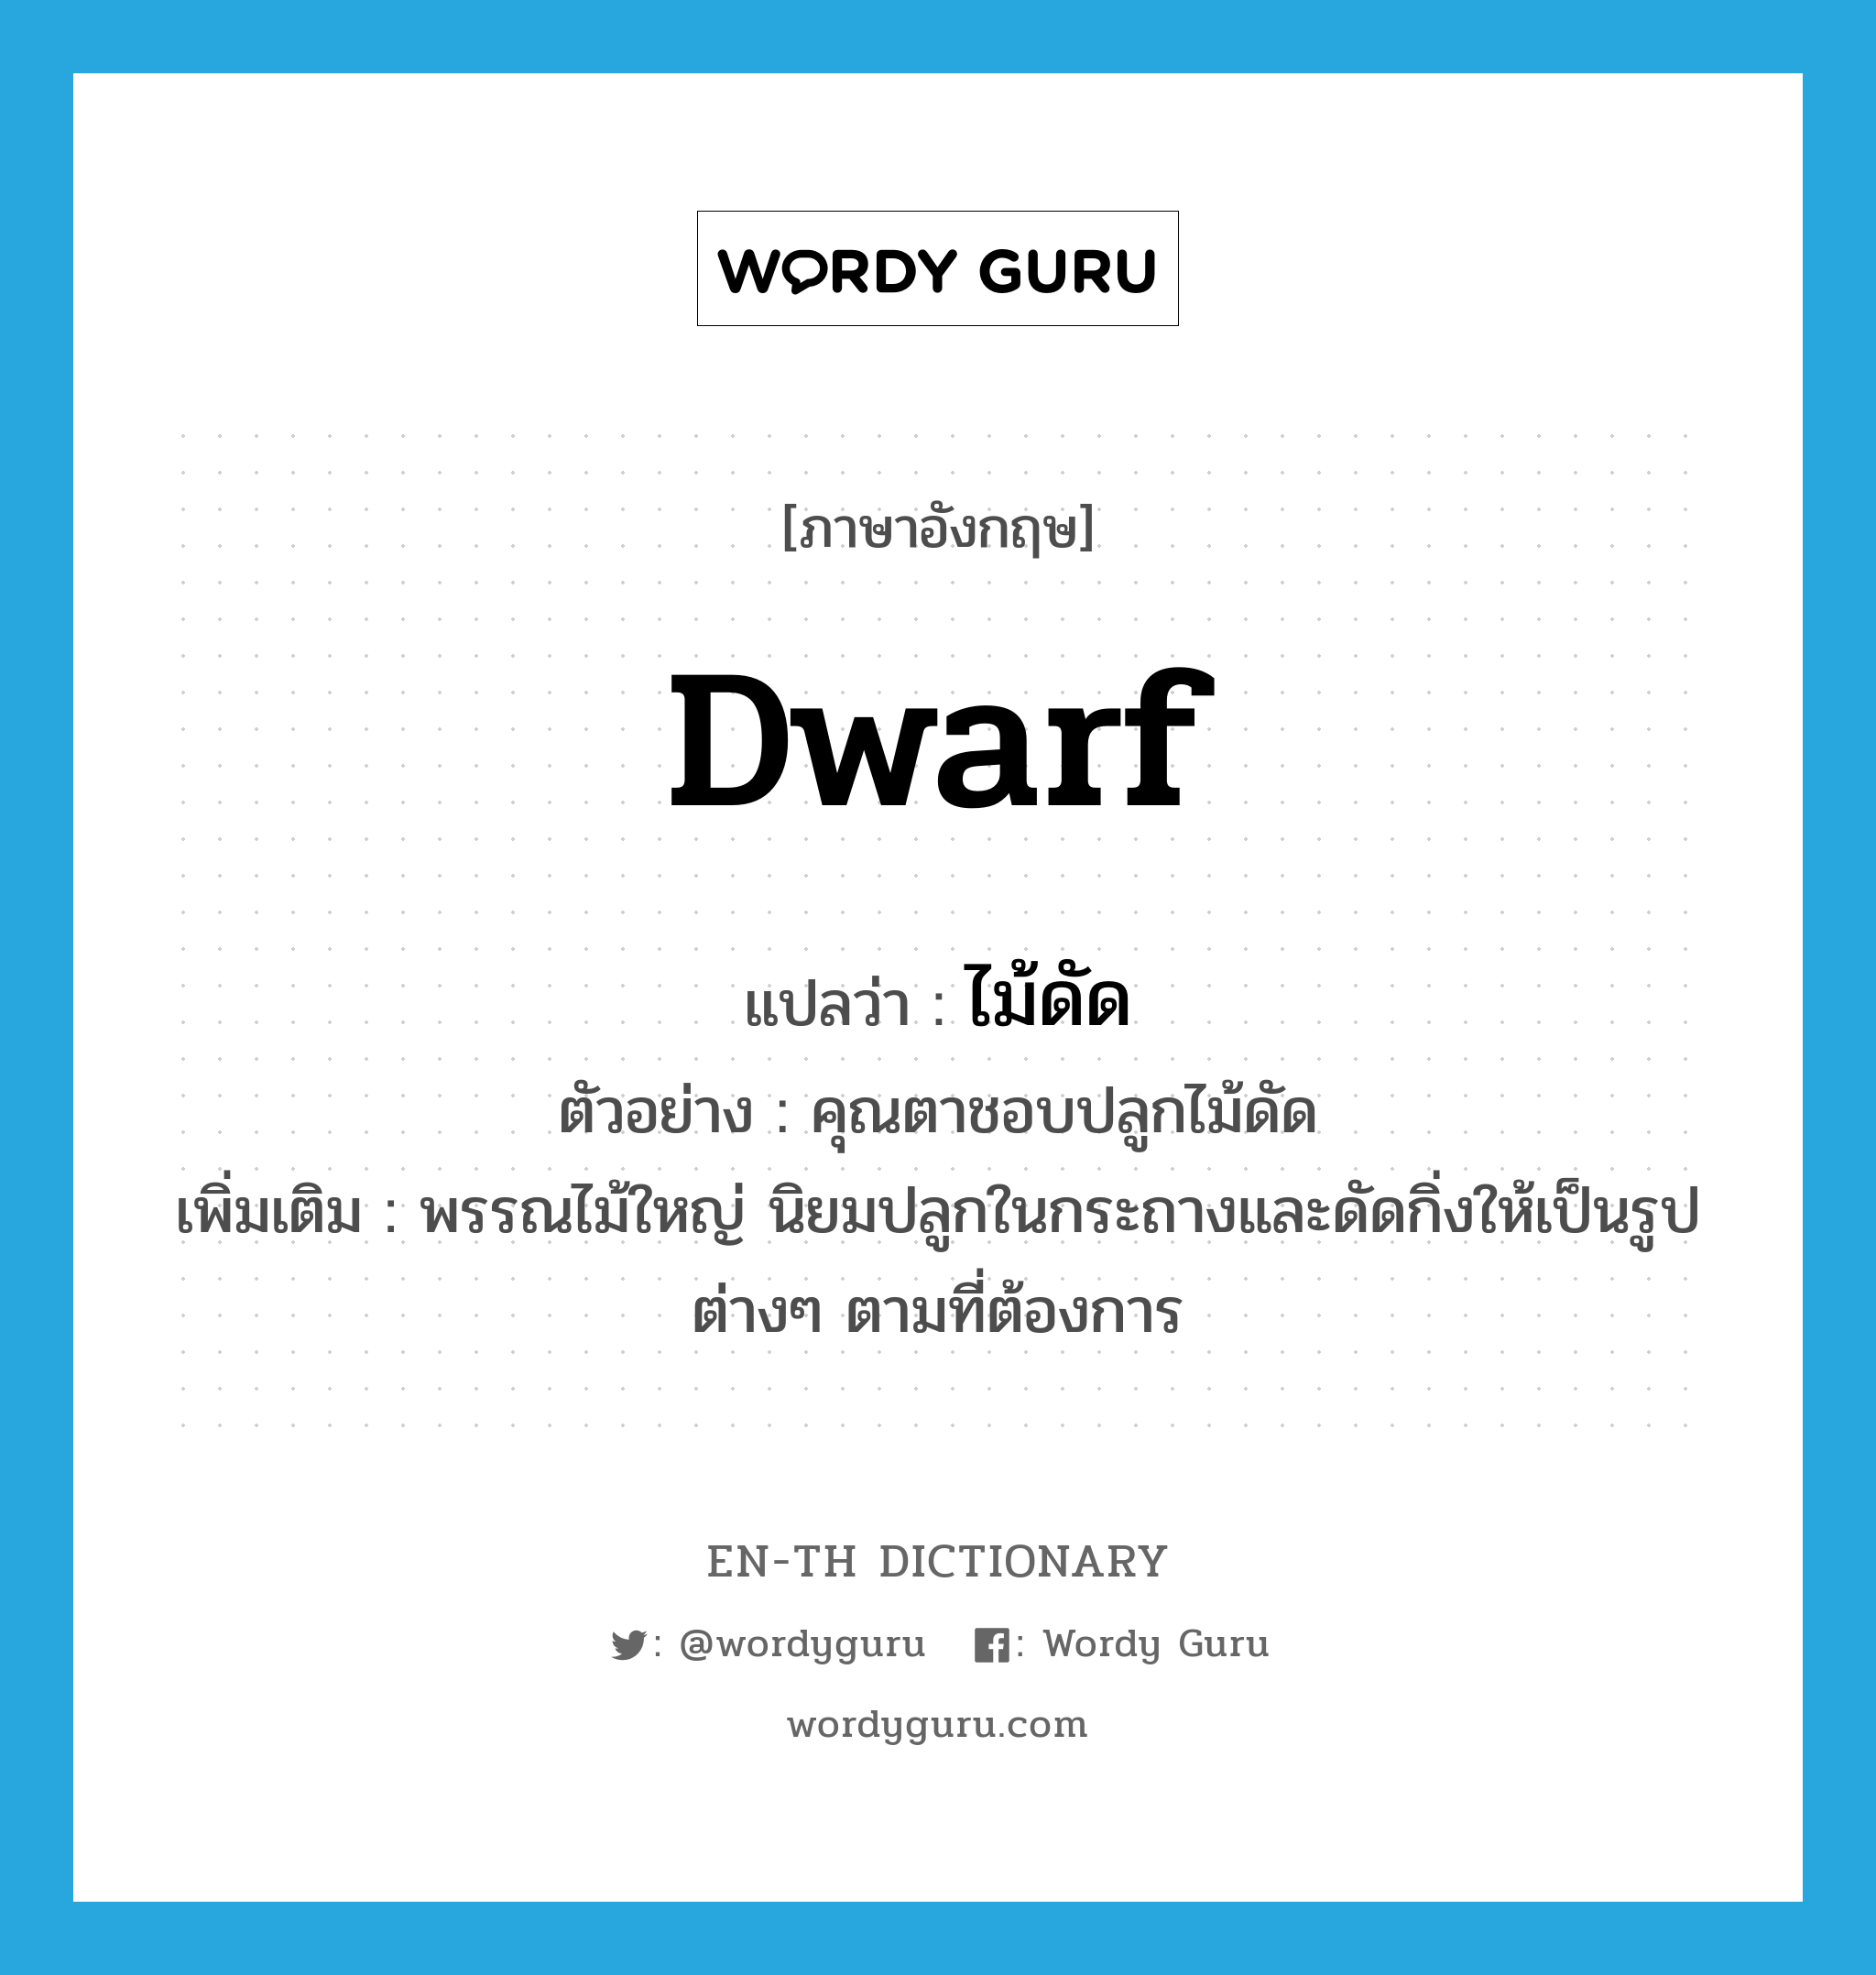 dwarf แปลว่า?, คำศัพท์ภาษาอังกฤษ dwarf แปลว่า ไม้ดัด ประเภท N ตัวอย่าง คุณตาชอบปลูกไม้ดัด เพิ่มเติม พรรณไม้ใหญ่ นิยมปลูกในกระถางและดัดกิ่งให้เป็นรูปต่างๆ ตามที่ต้องการ หมวด N